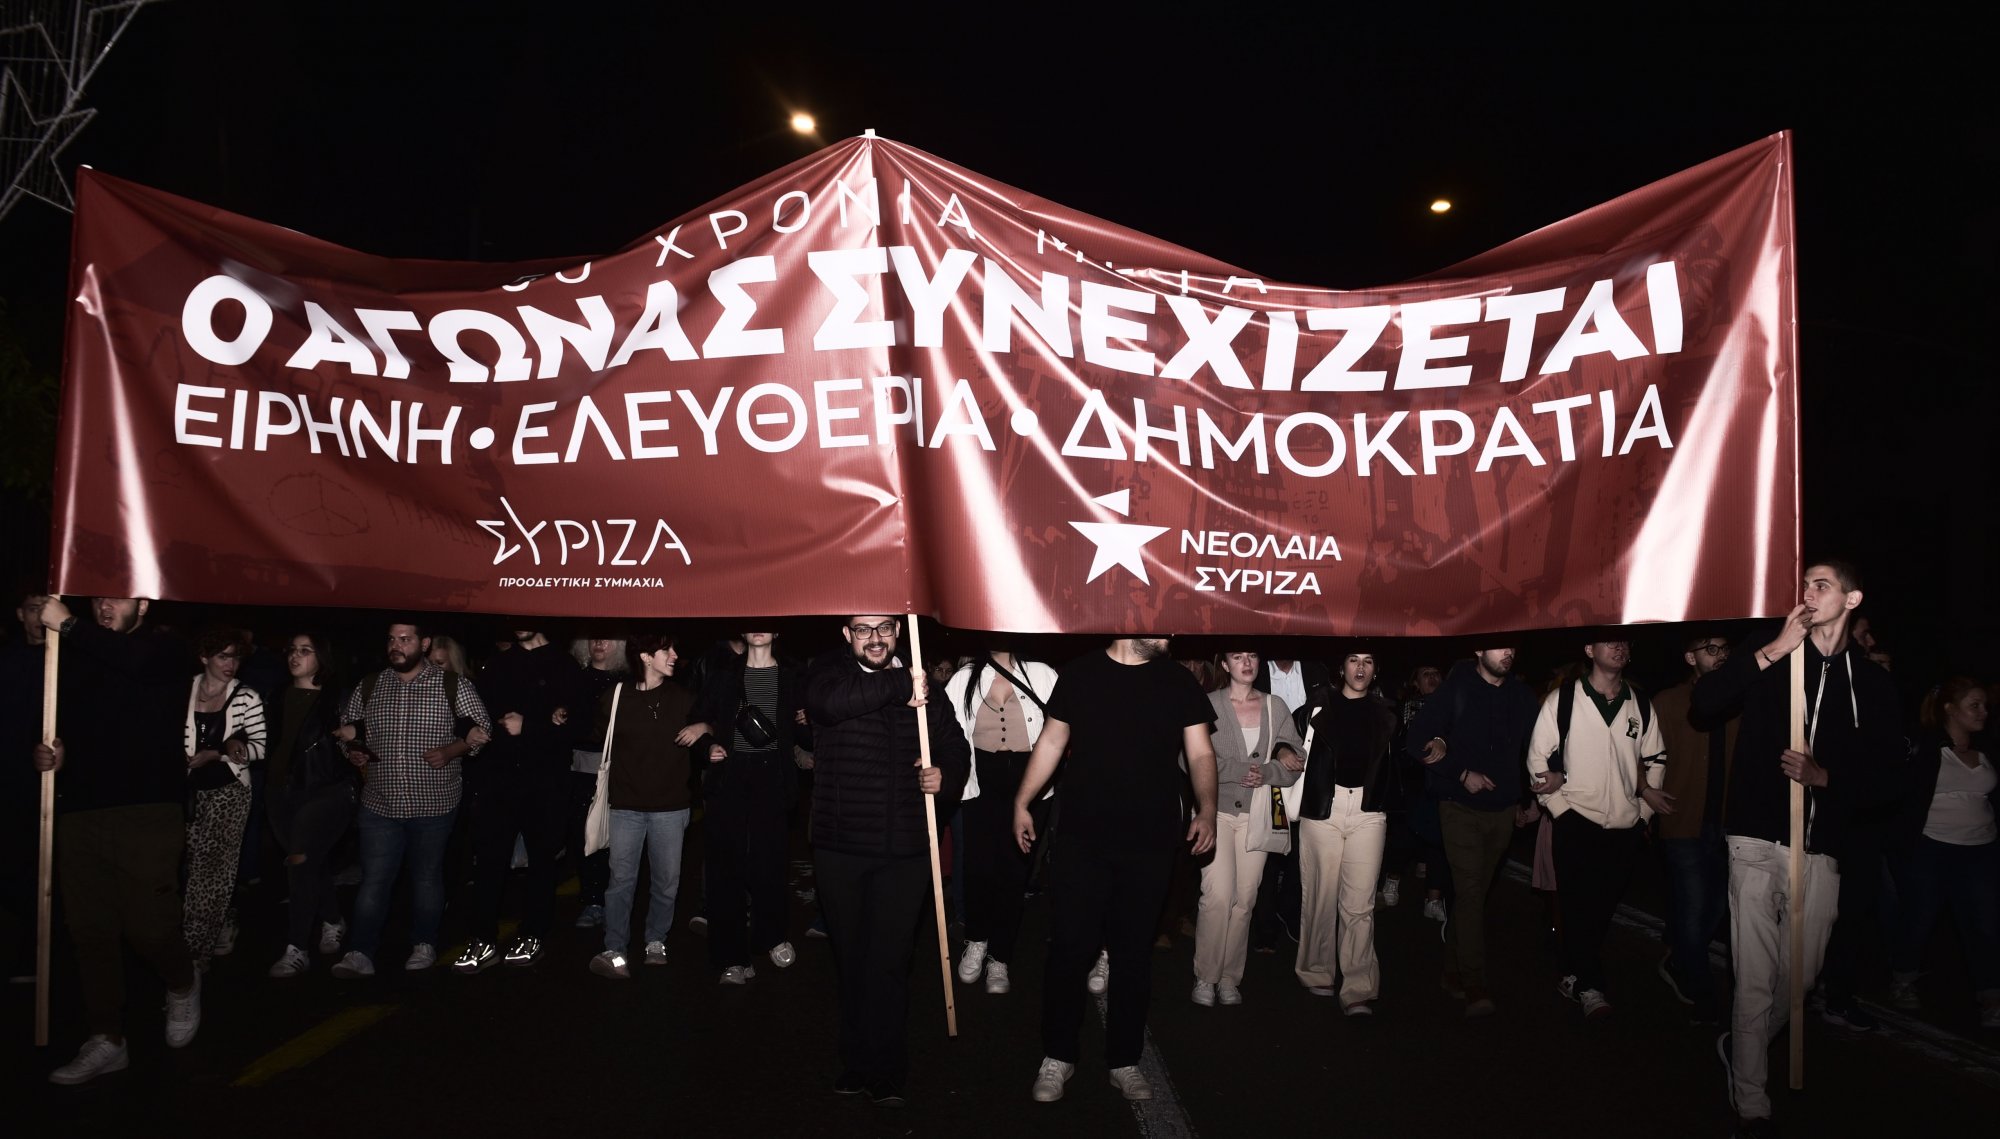 Η νεολαία ΣΥΡΙΖΑ ήταν μικρή, χωρίς γείωση στην κοινωνία, λέει ο Πέτρος Παππάς